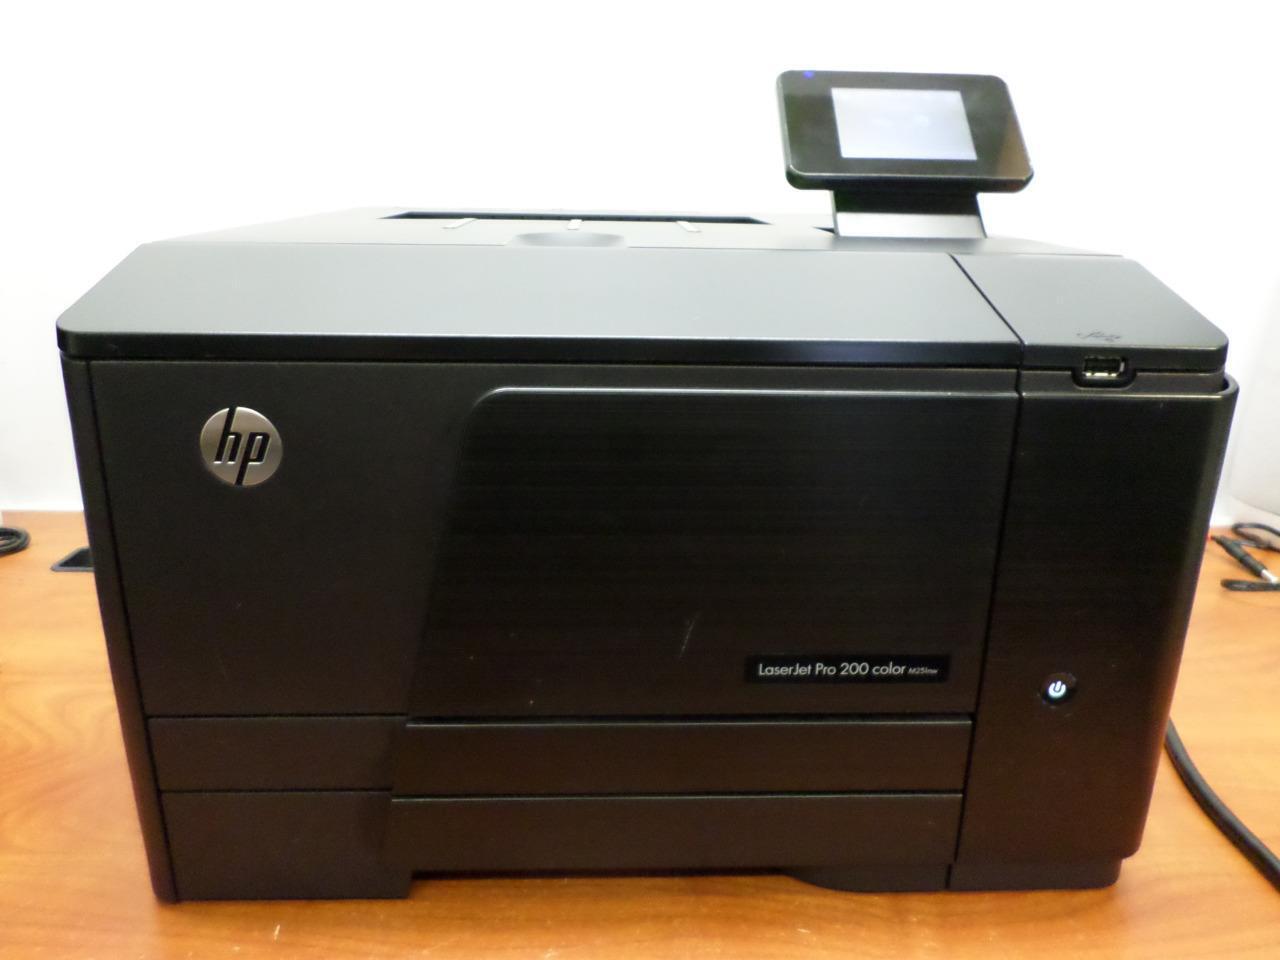 HP LaserJet Pro 200 Color M251nw Workgroup Color Laser Printer 12532 w/ Toner